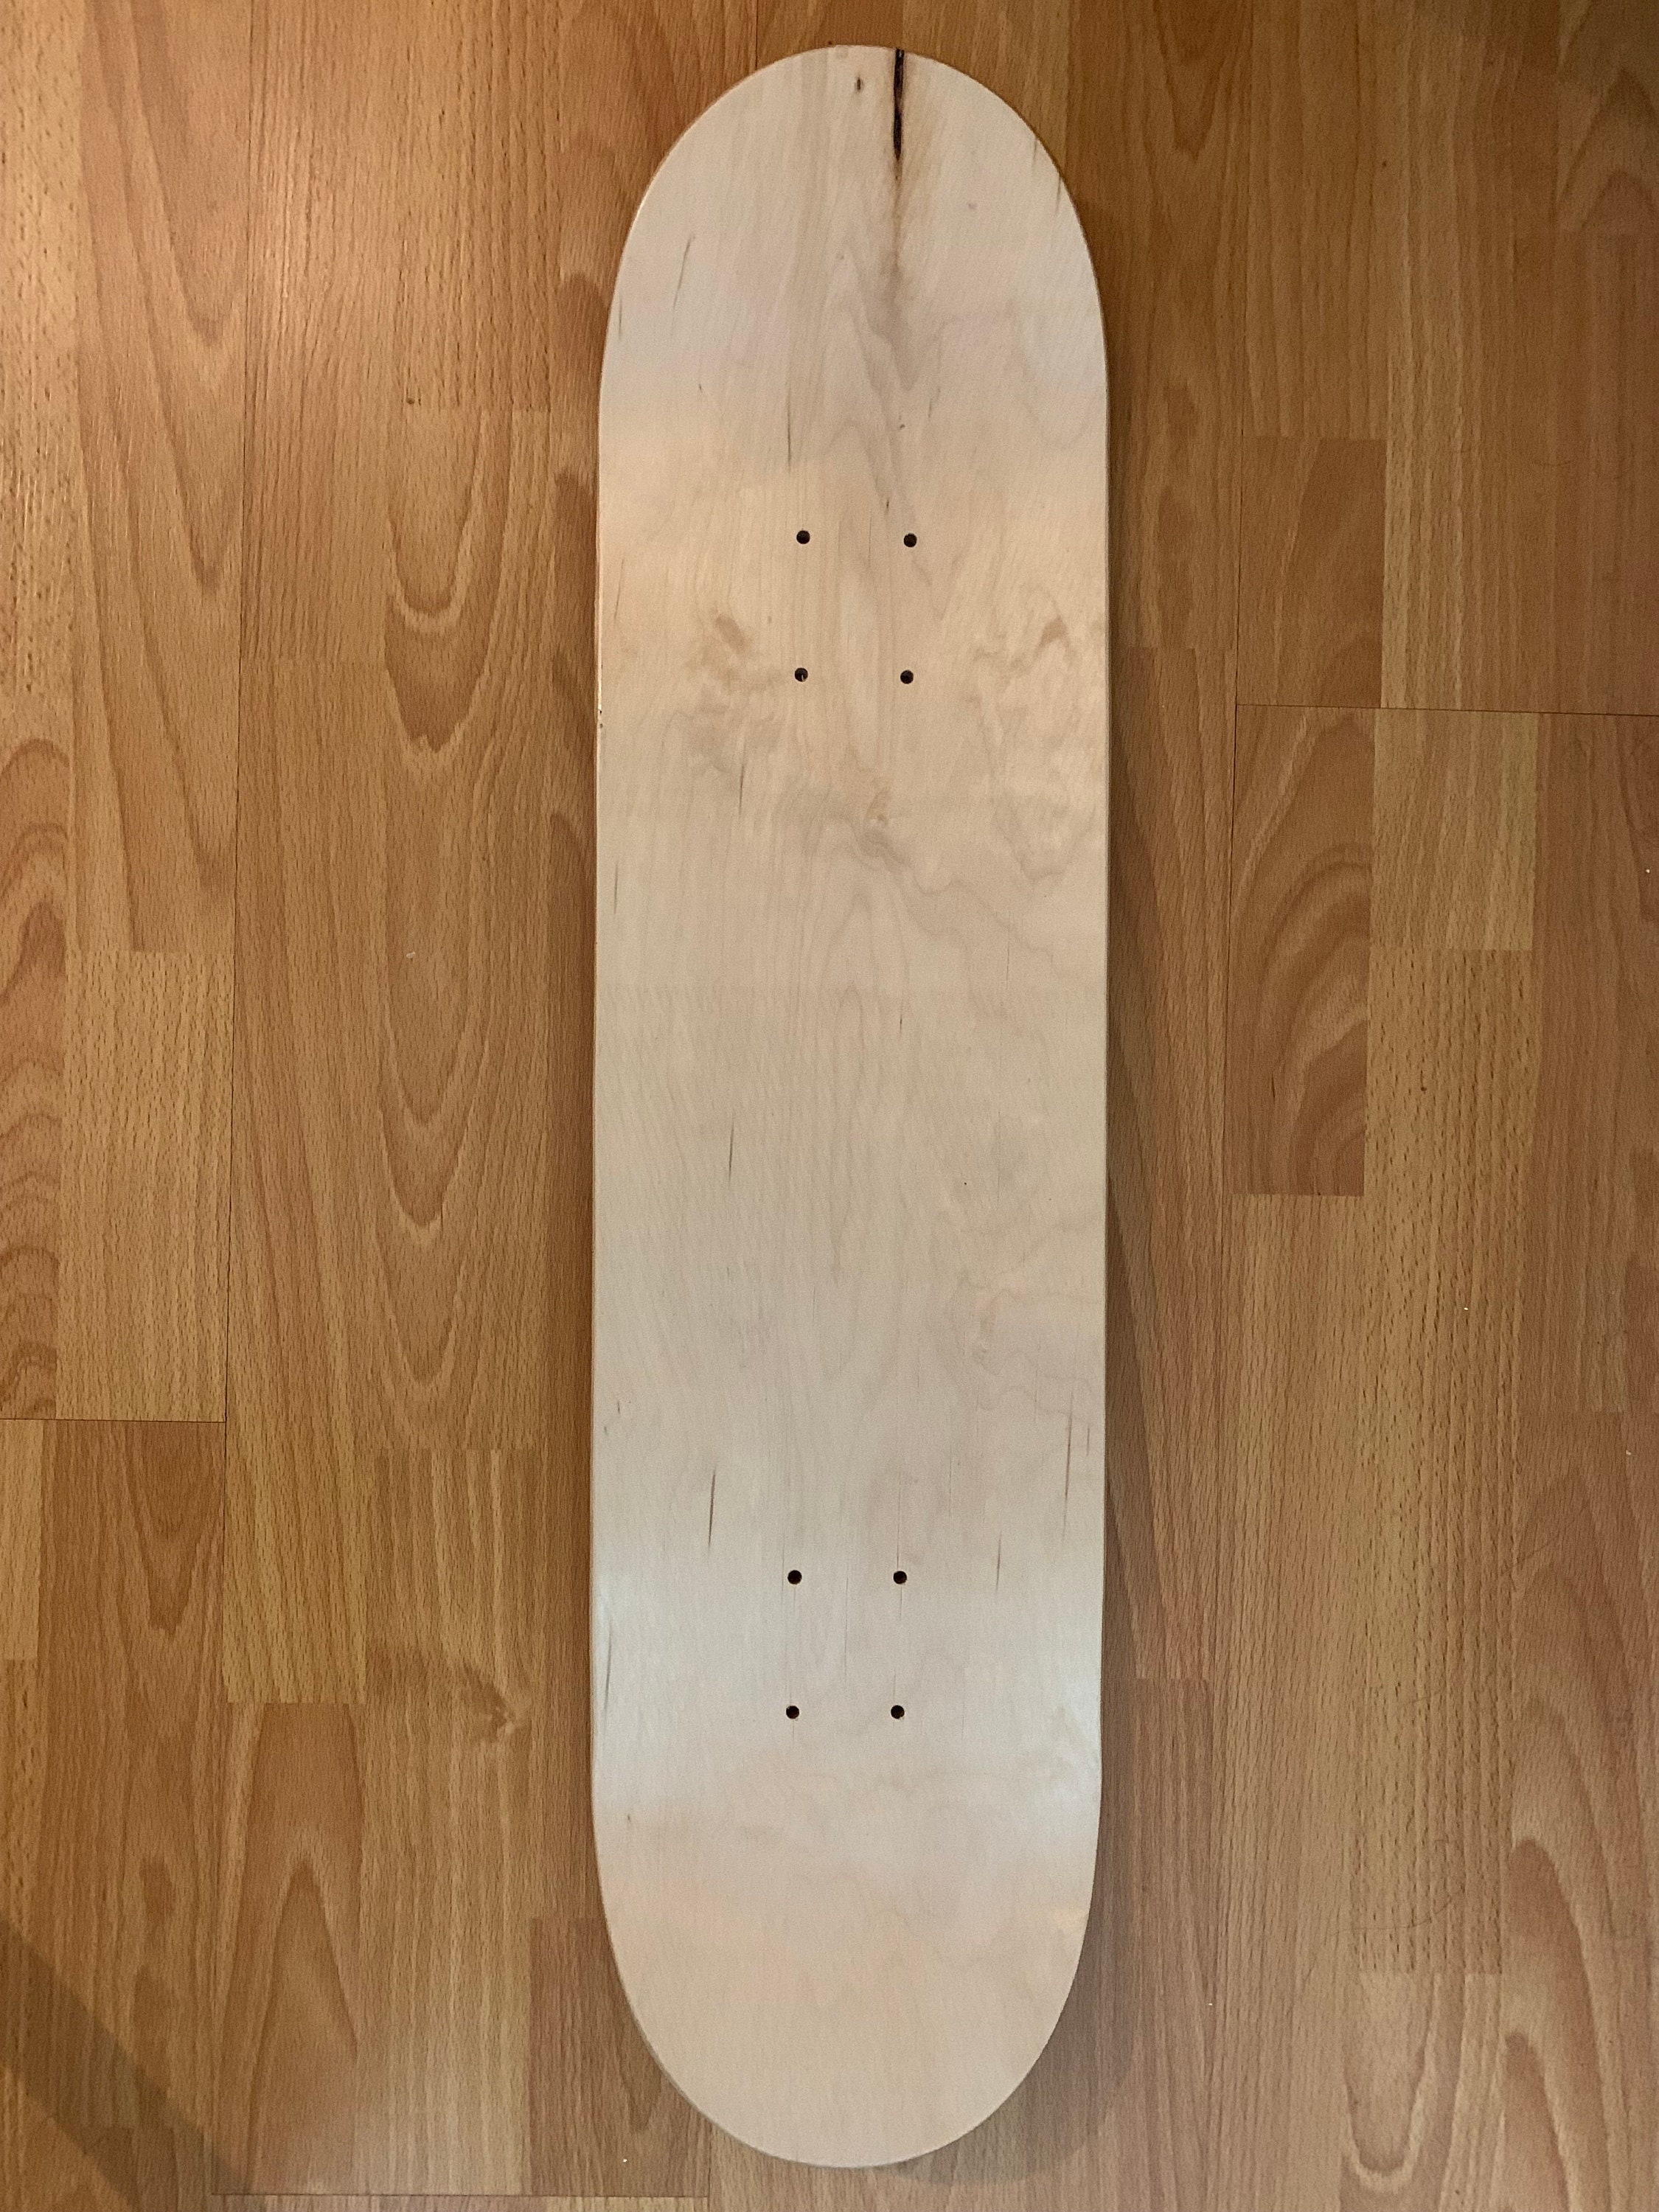 Woodburn Skateboard Deck Tiger One of A Kind Design - Etsy